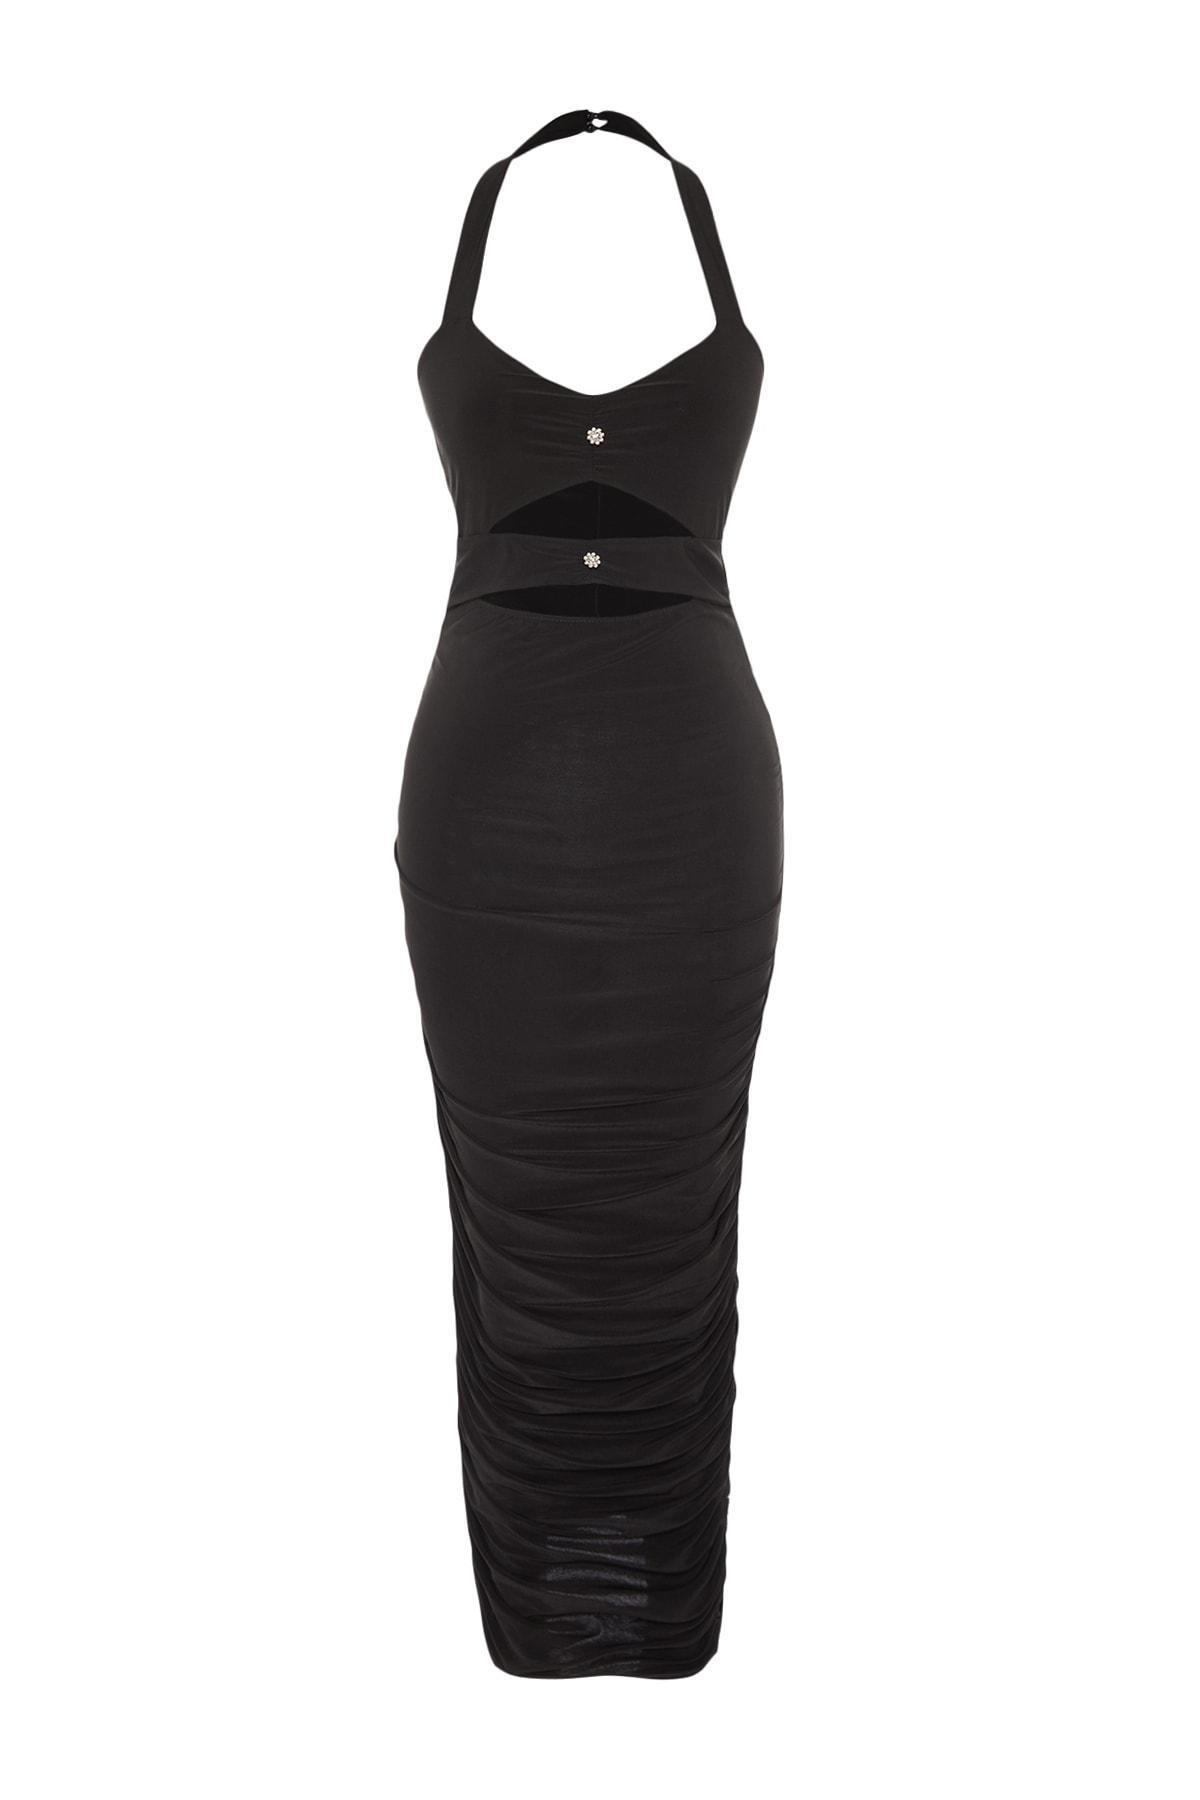 Trendyol - Black Detailed Dress